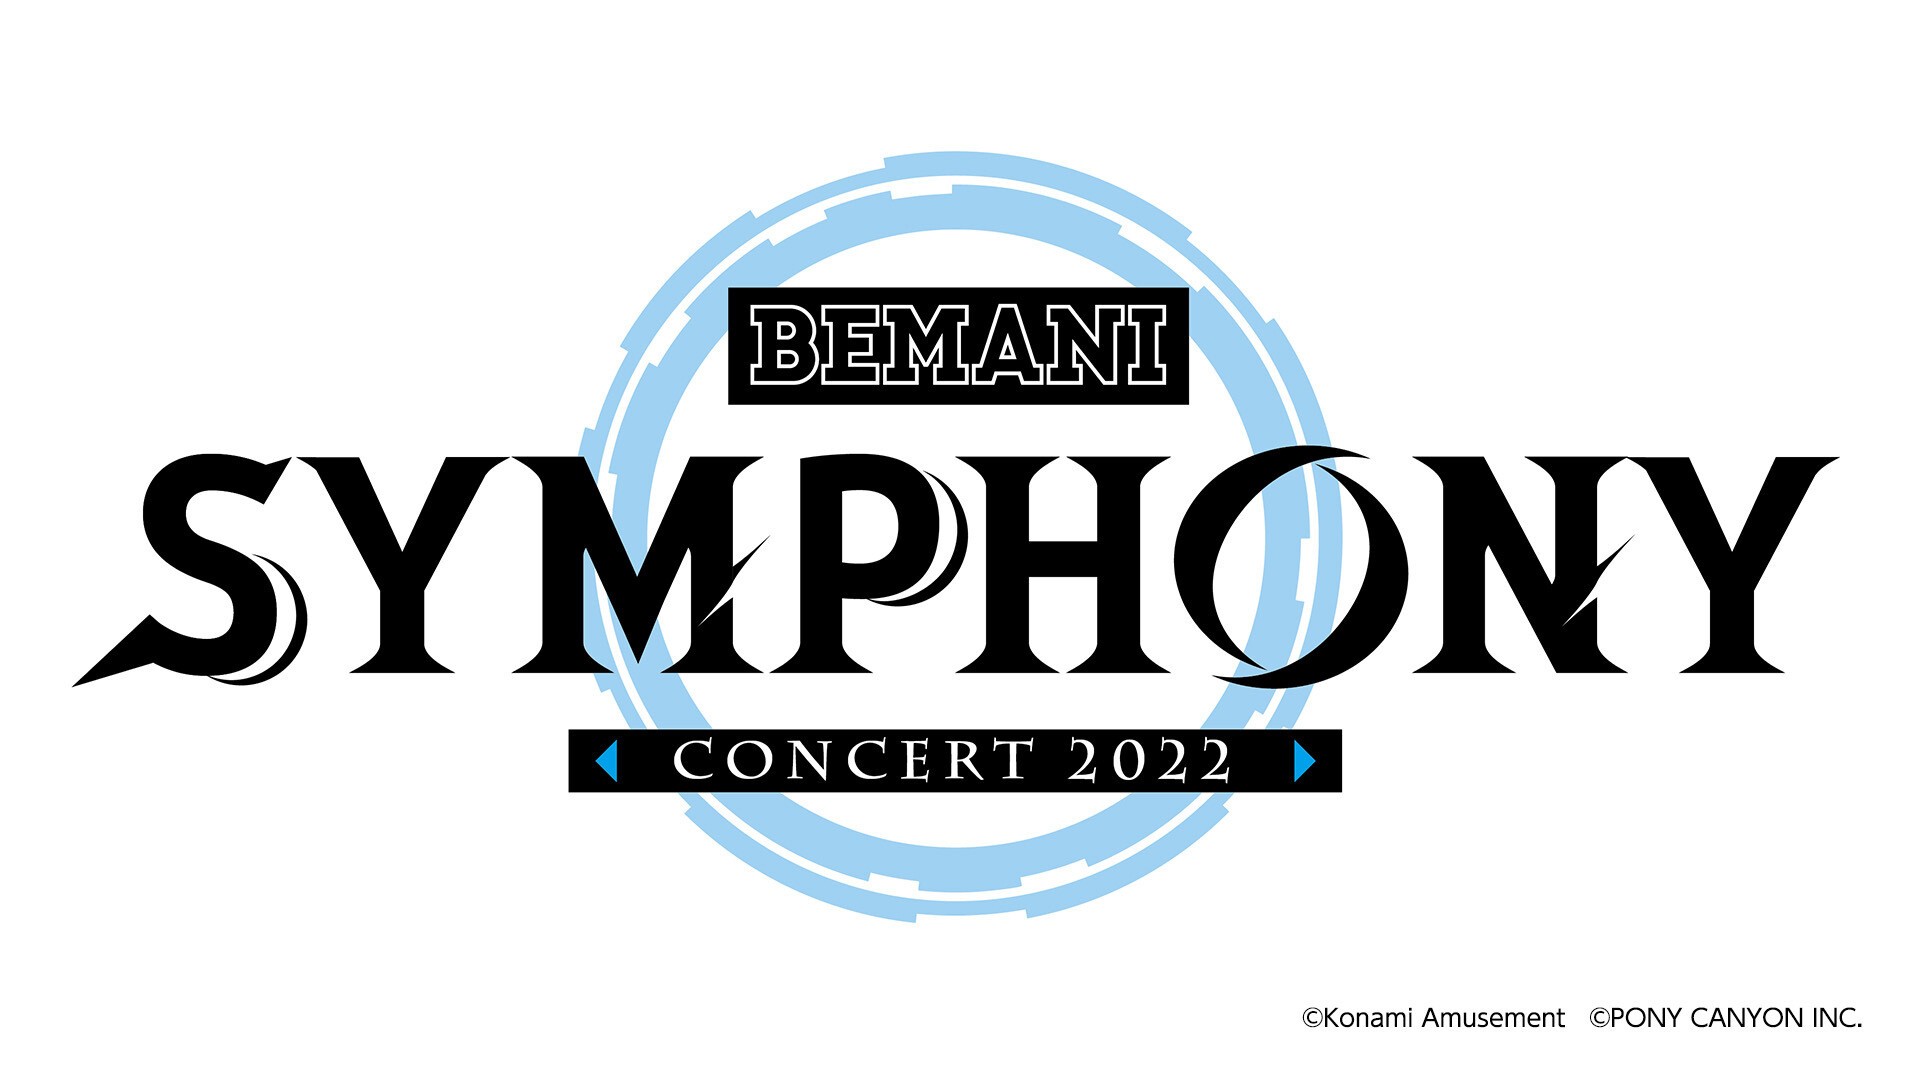 BEMANI SYMPHONY Concert 2022 | Zaiko